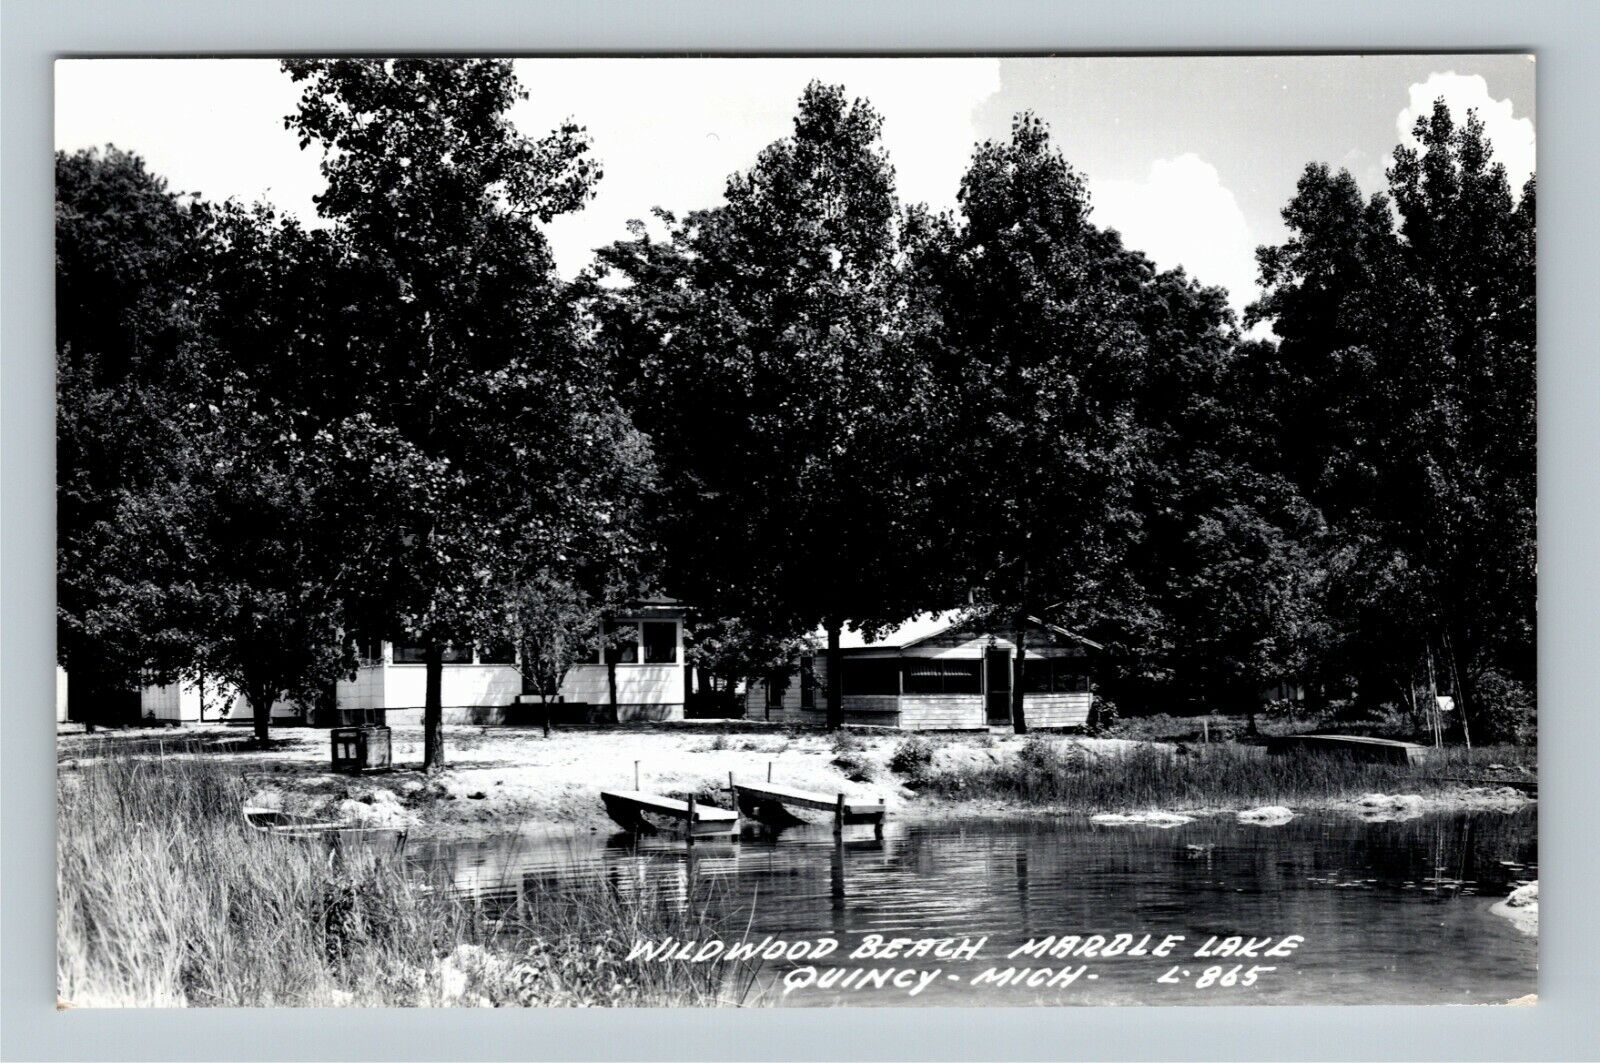 Quincy MI Wildwood Beach Marble Lake Buildings RPPC Michigan Vintage Postcard